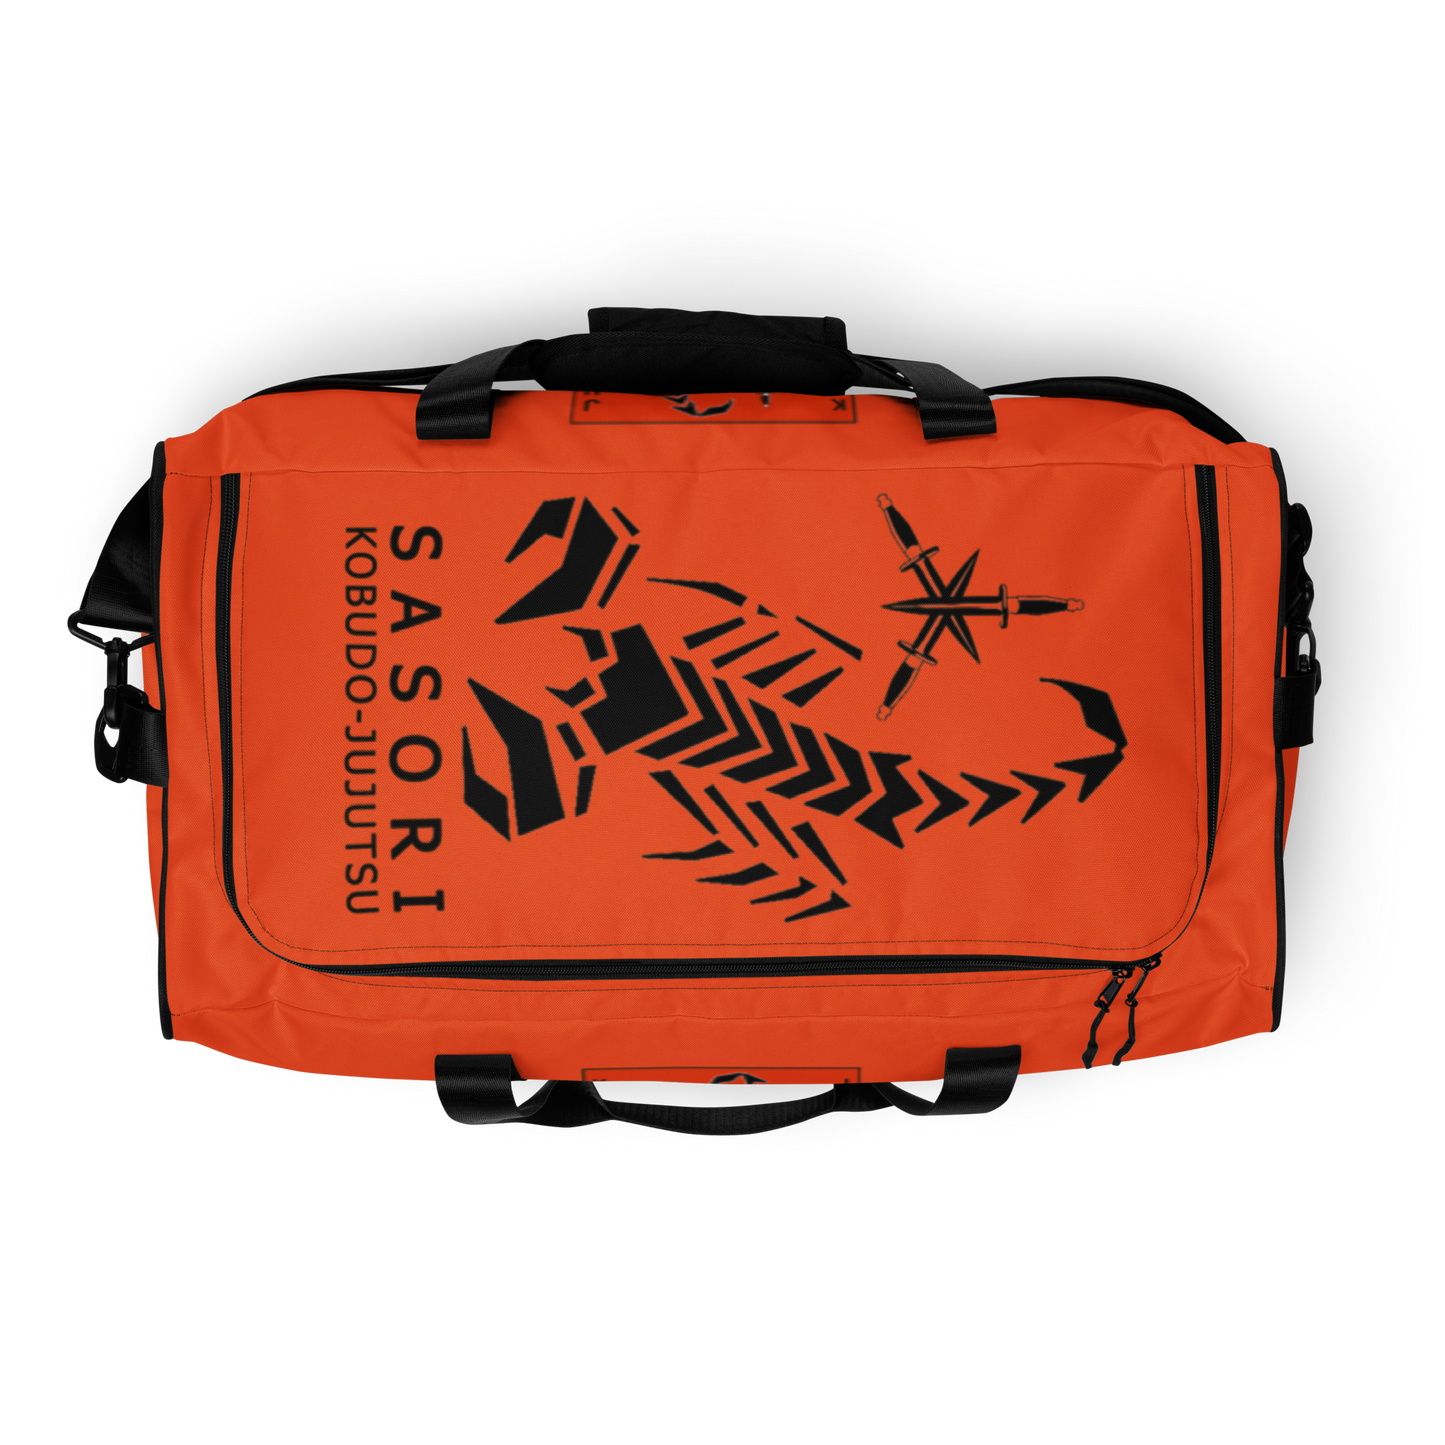 SAS-91222 Sporttasche #orange #personalisierbar